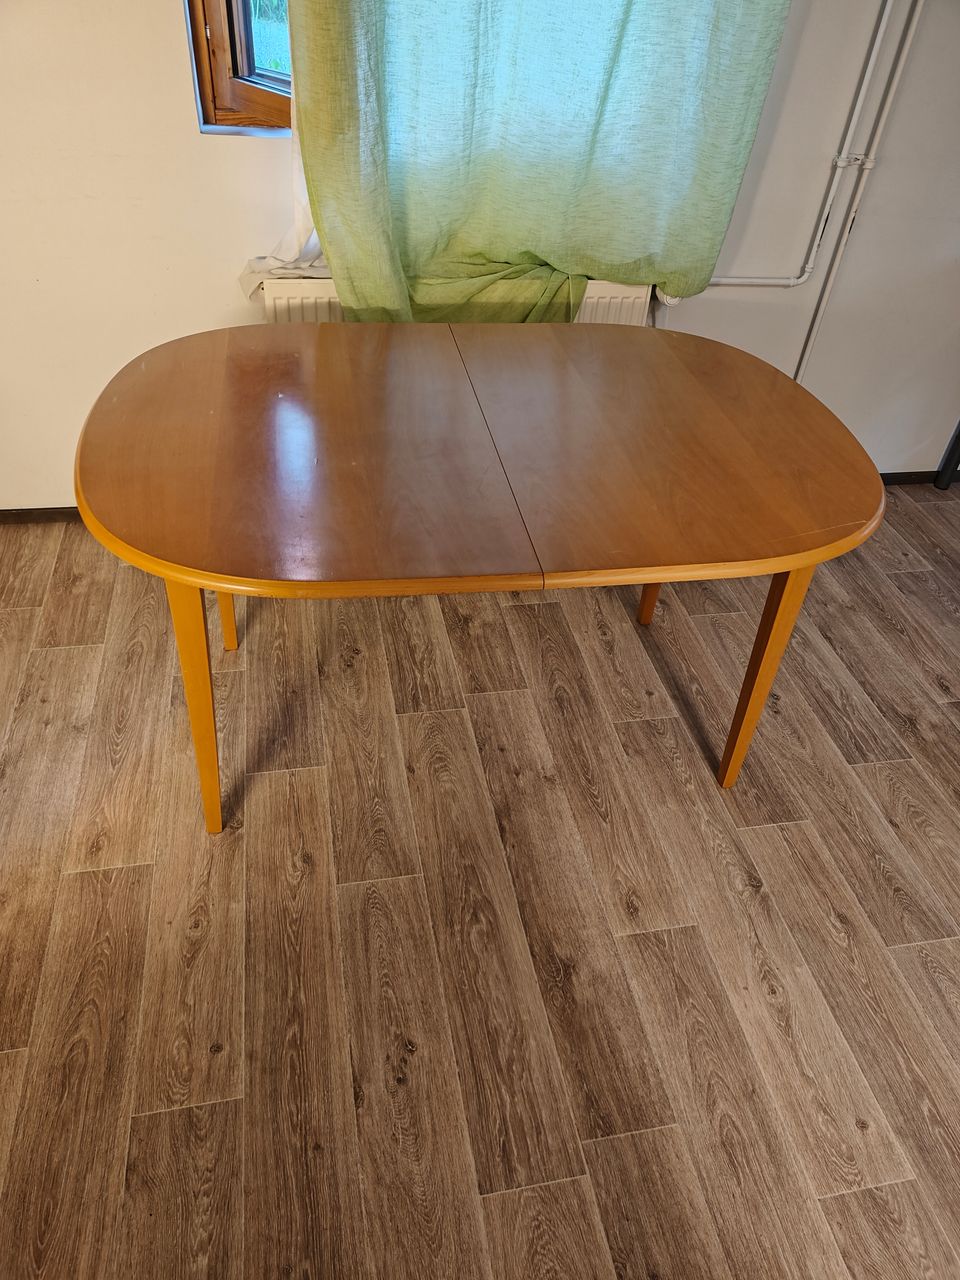 Myynnissä puinen, laajenettava pöytä